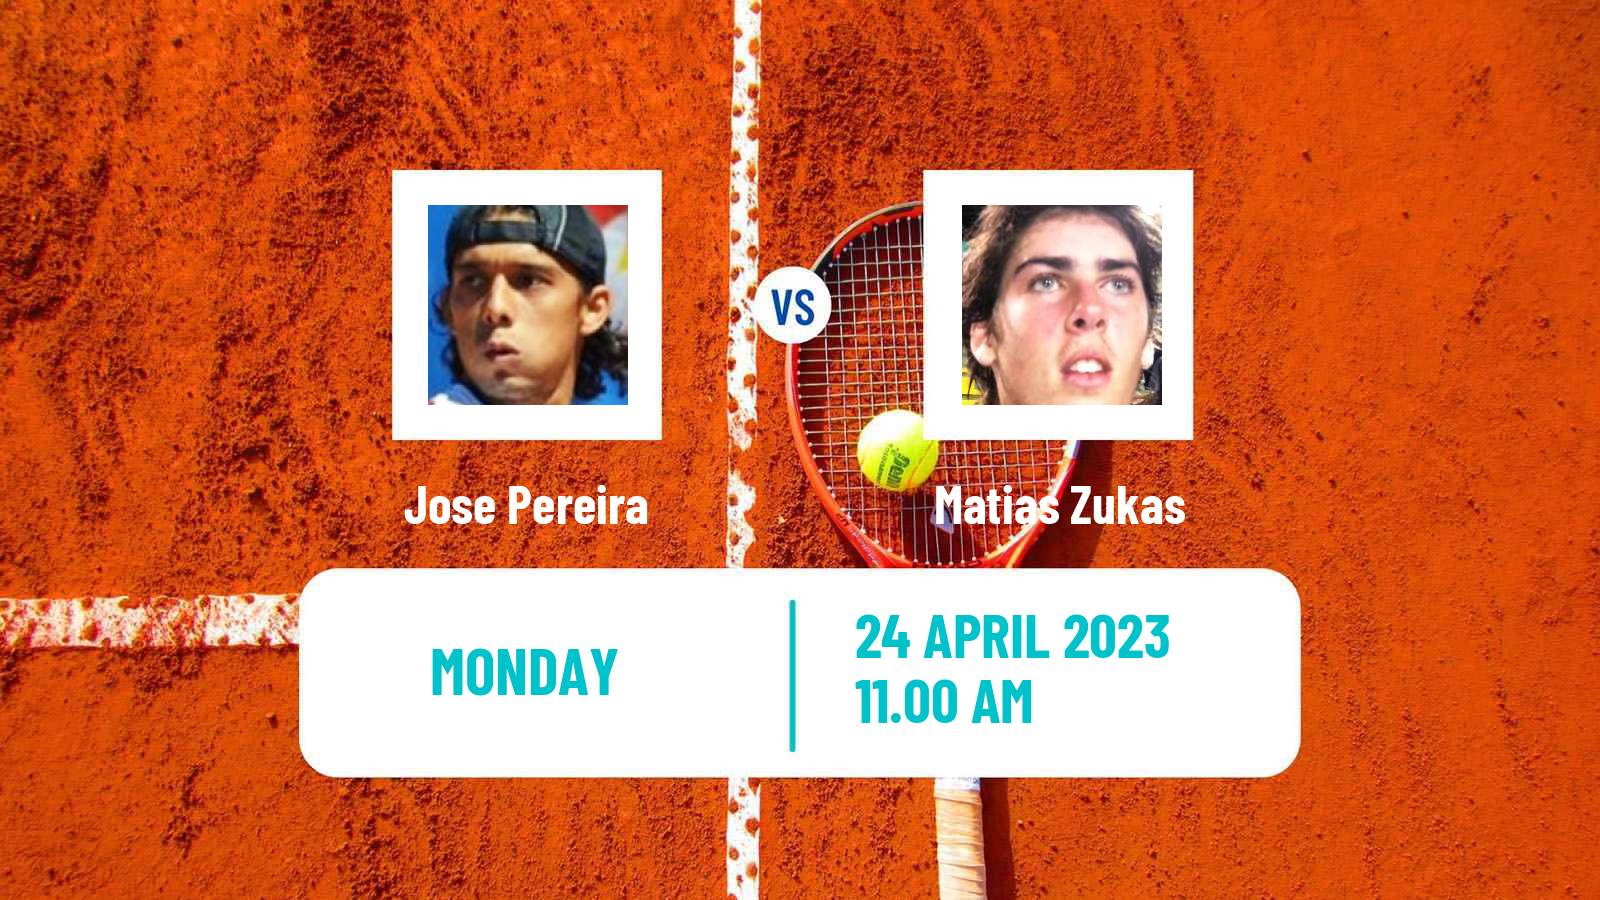 Tennis ATP Challenger Jose Pereira - Matias Zukas